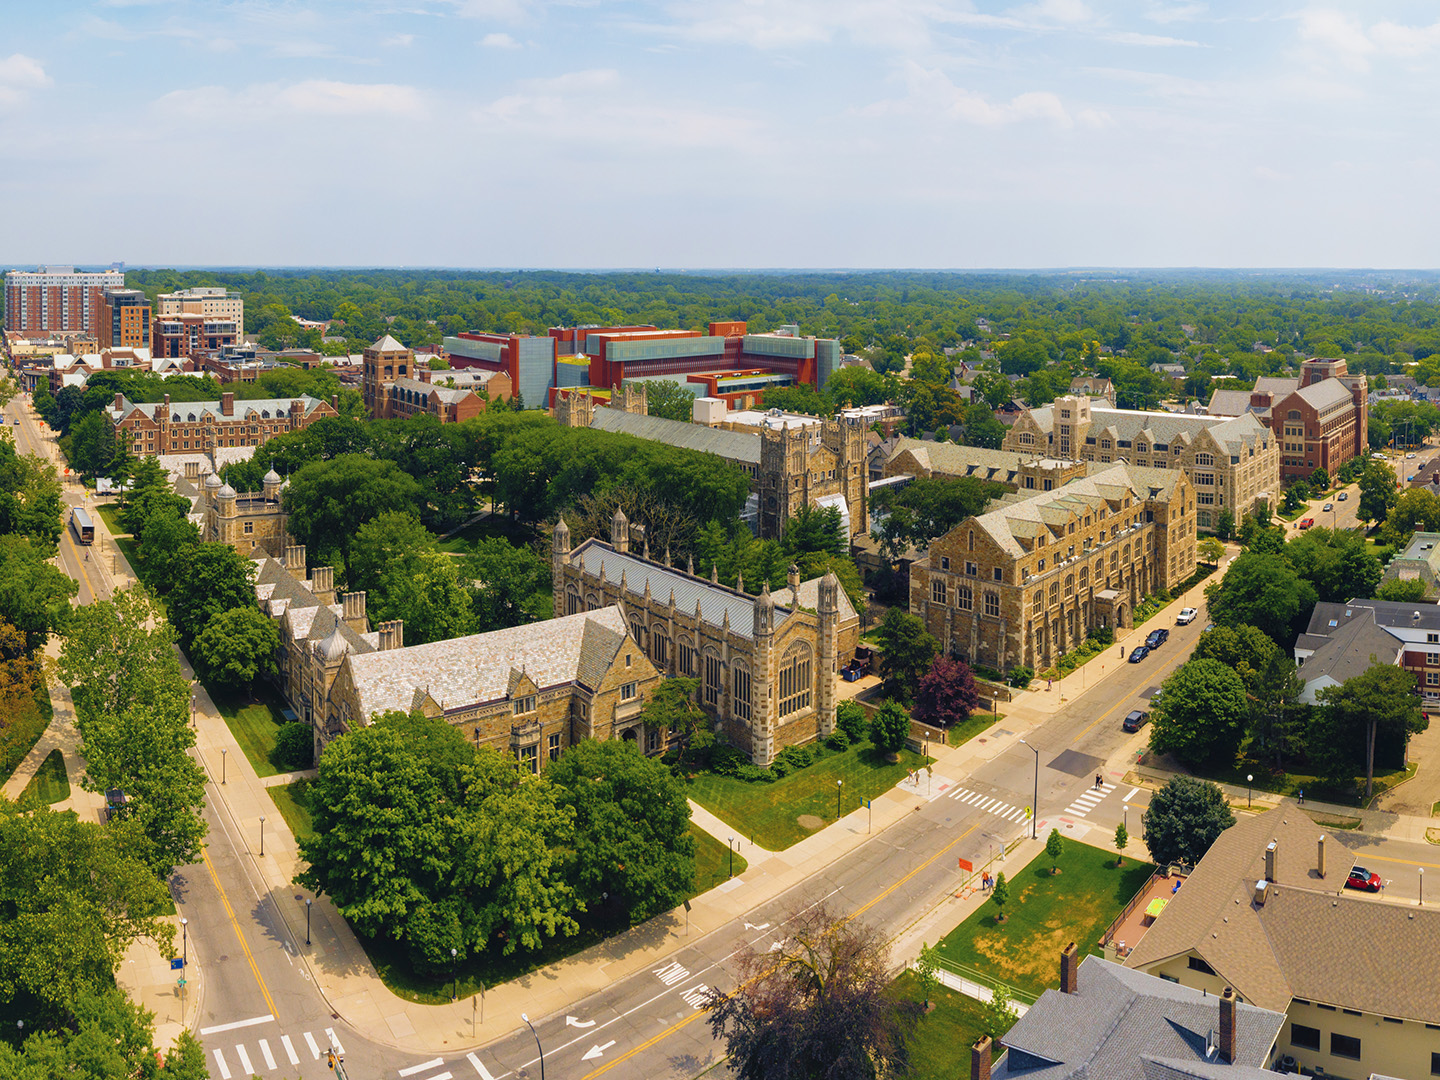 University of Michigan kampus, uczelnia. To jedna z tych uczelni amerykańskich, które cieszą się bardzo dobrą opinią wśród pracodawców.